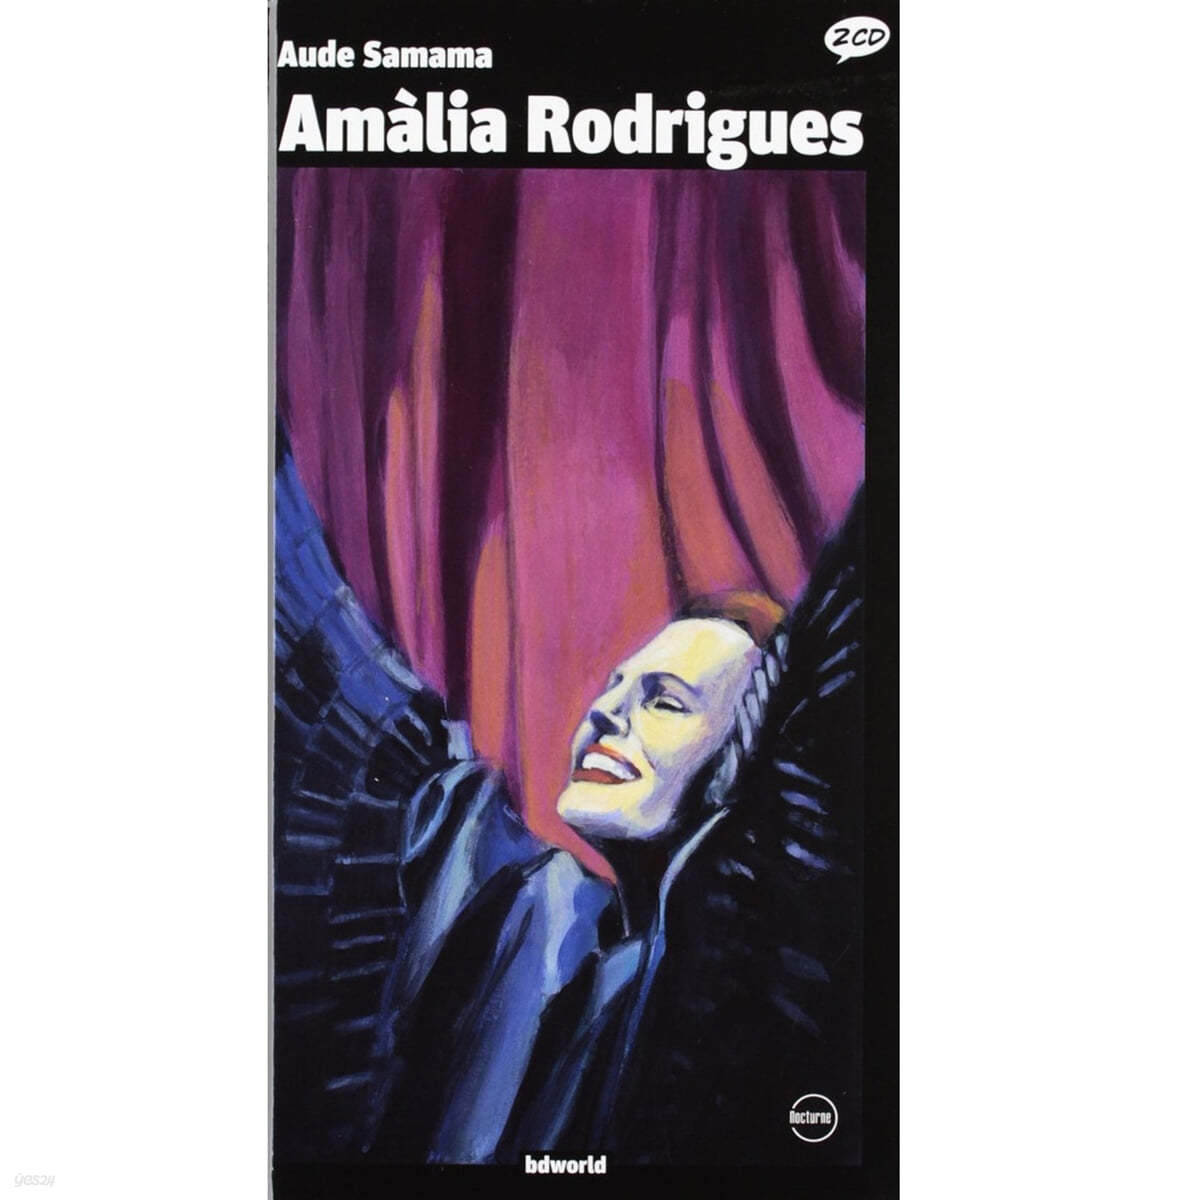 일러스트로 만나는 아말리아 로드리게스 (Amalia Rodrigues Illustrated by Aude Samama) 